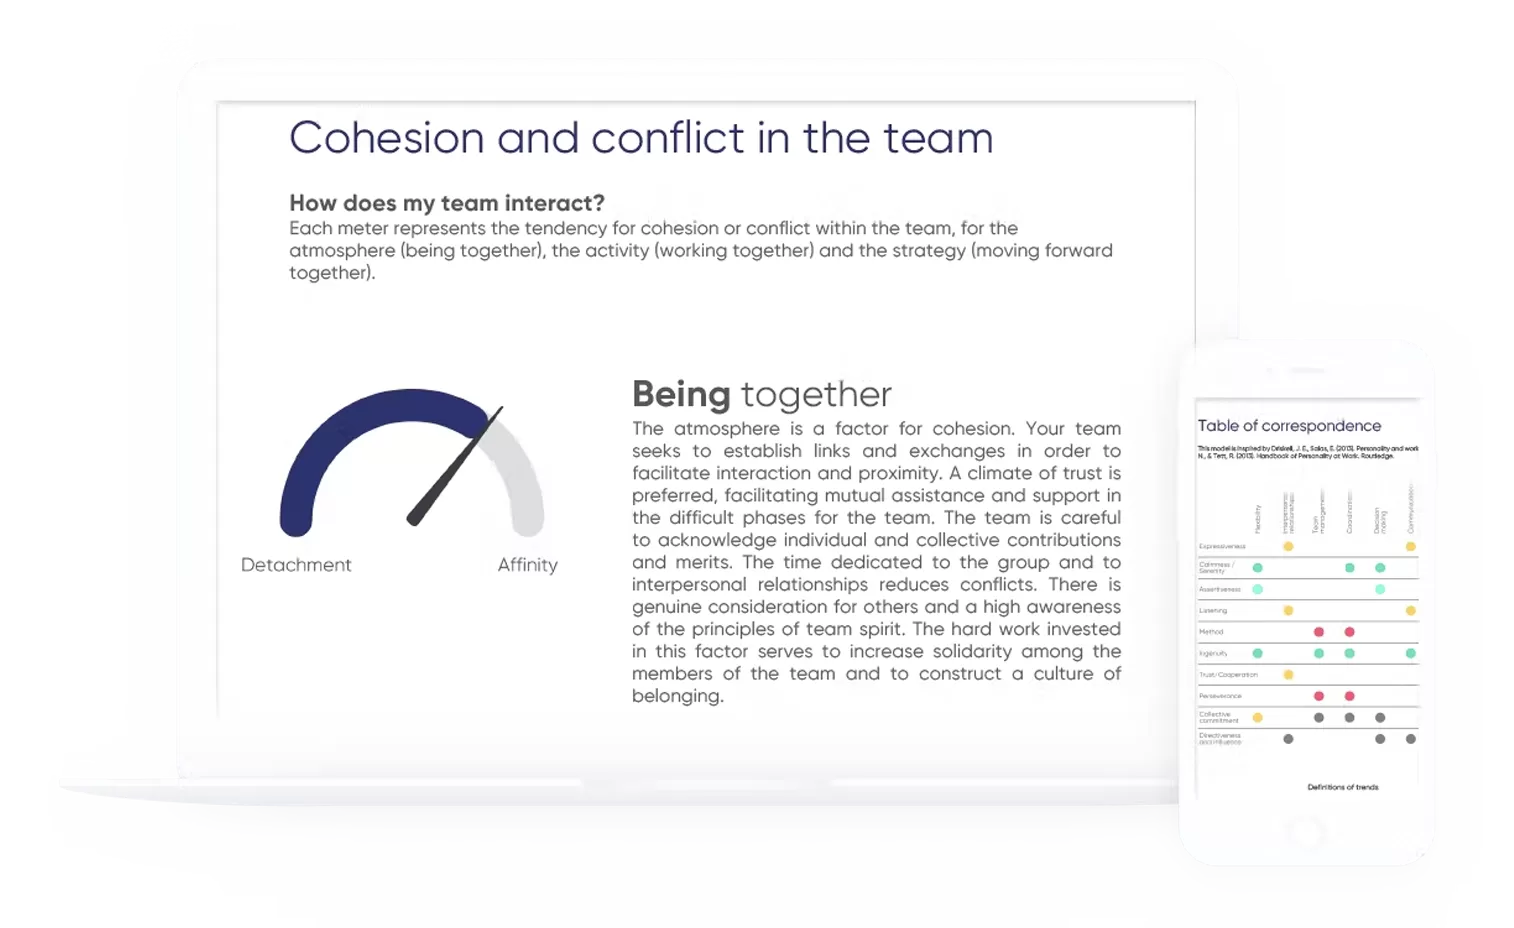 Uma visão em
perspectiva
dos riscos de coesão e/ou conflito.